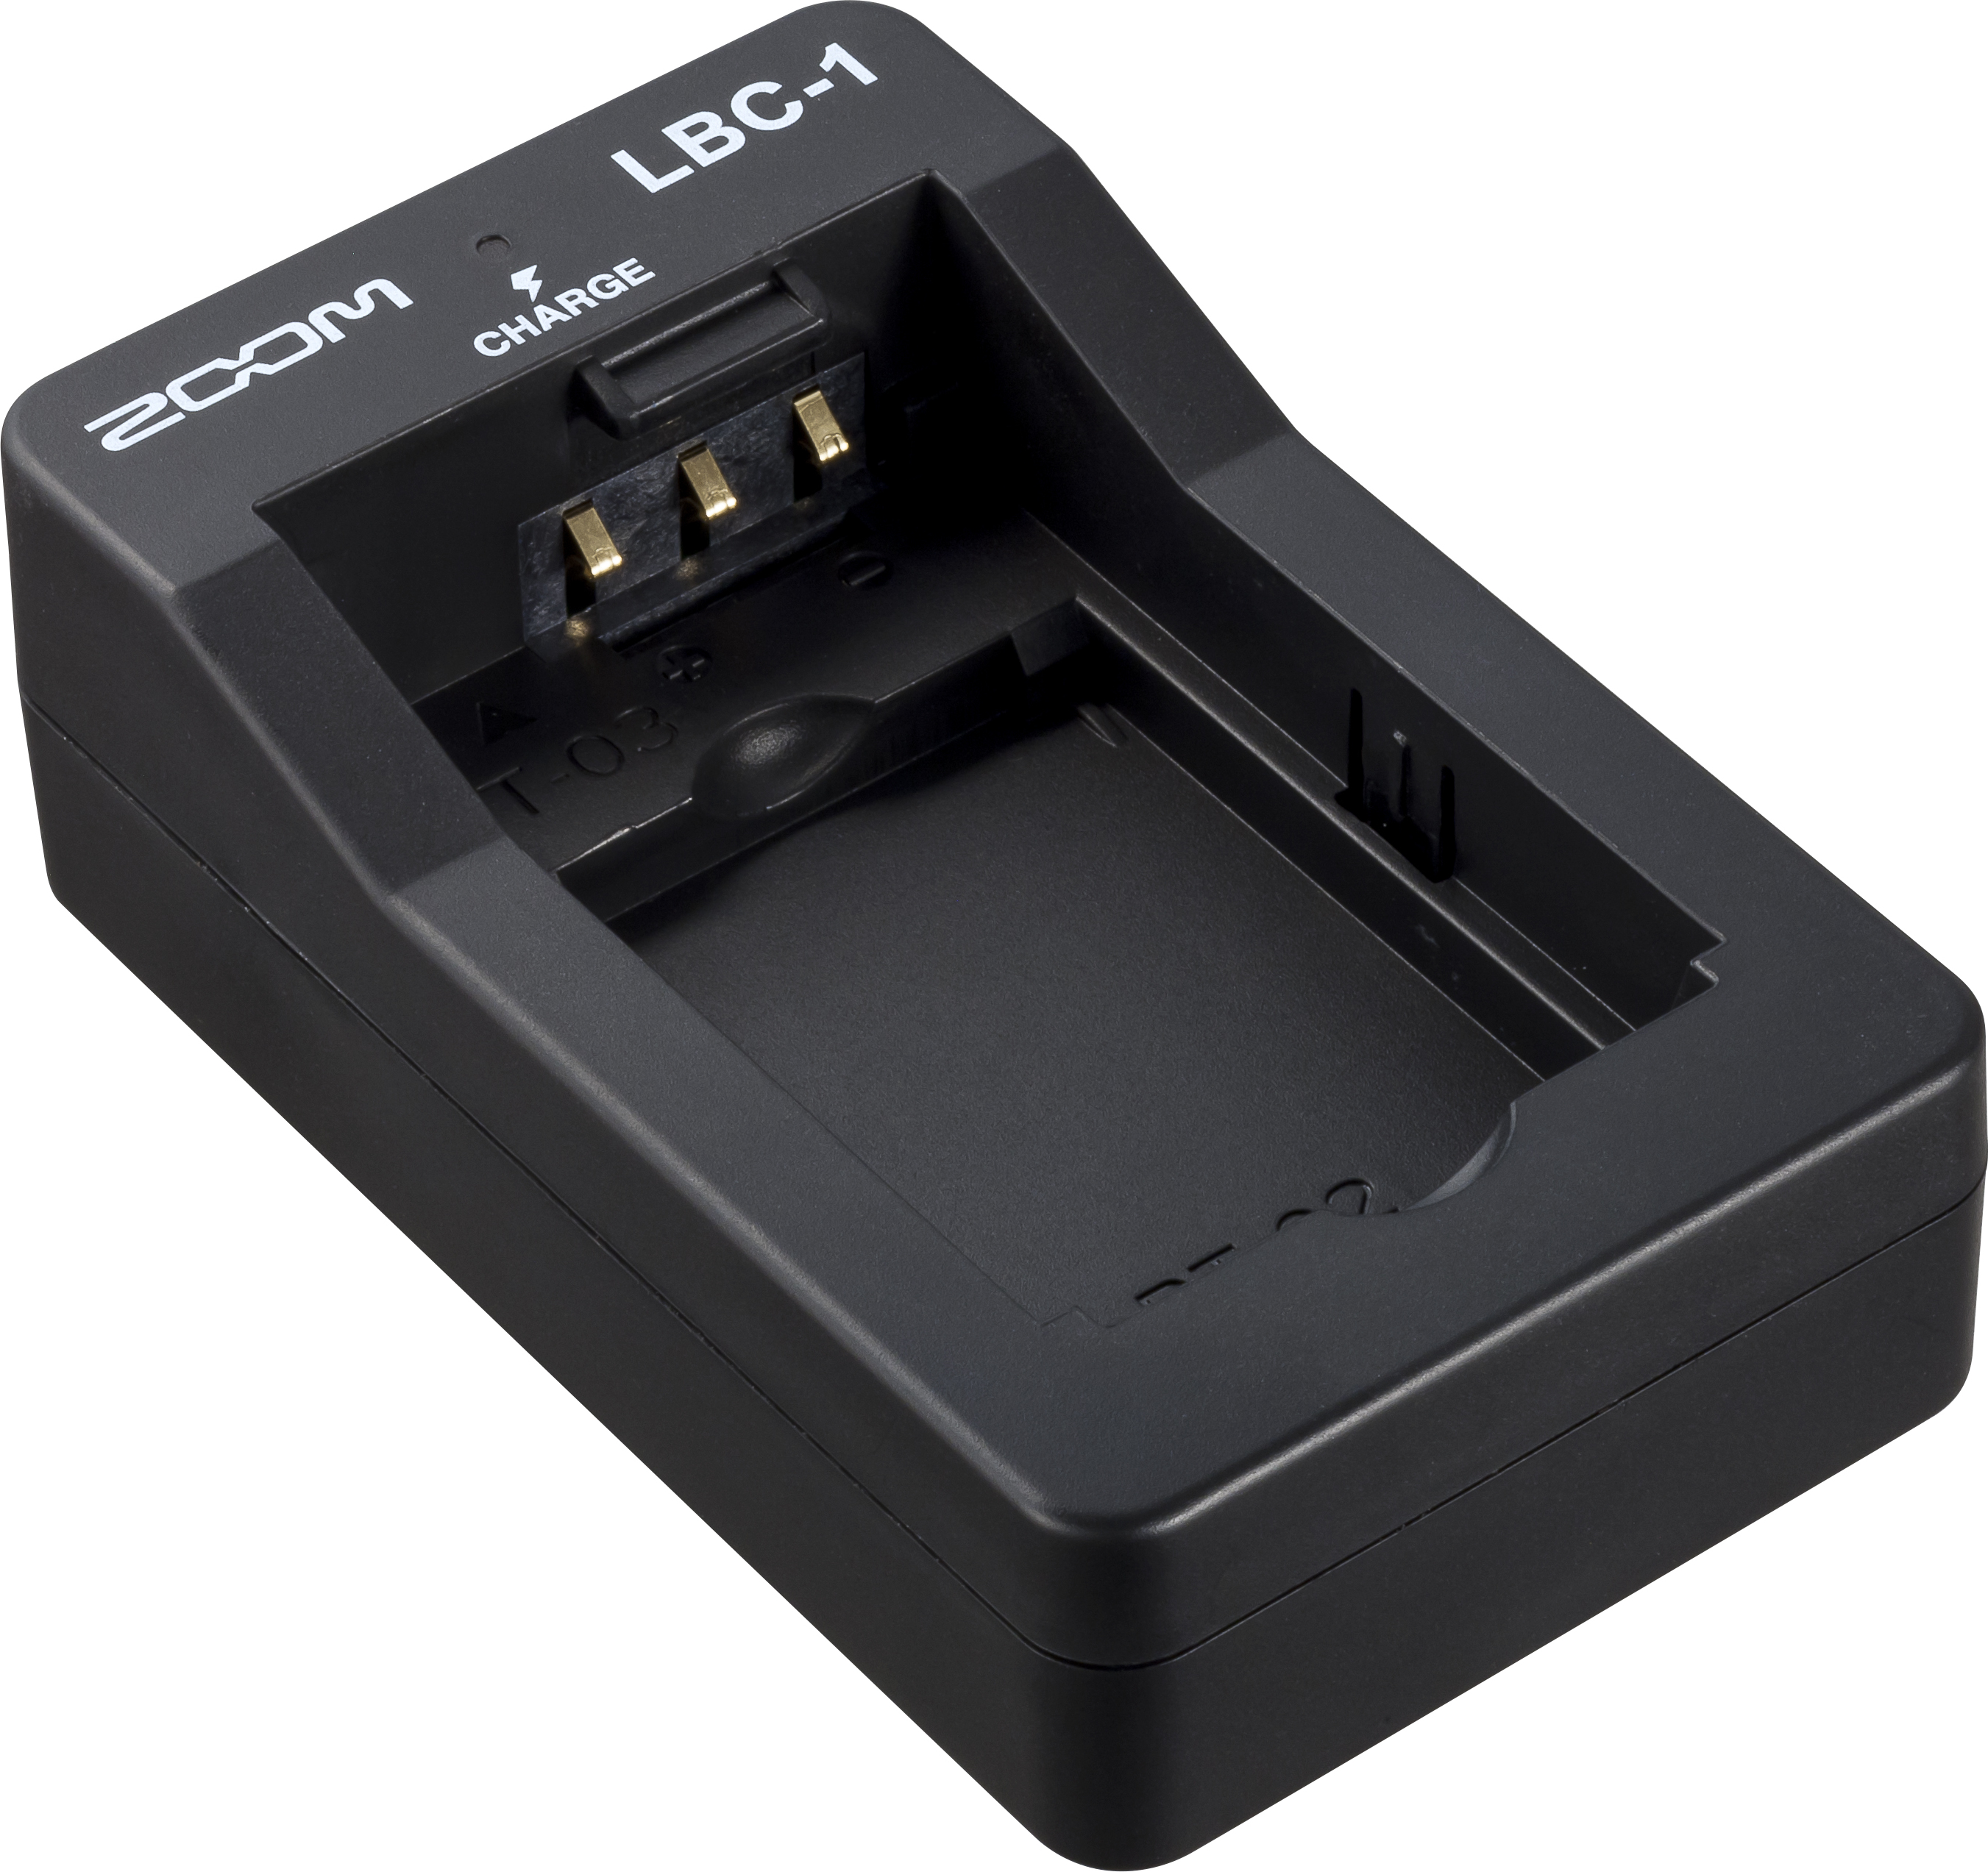 Zoom Lbc1 Chargeur Batterie Q8 - Cargador de pilas - Main picture